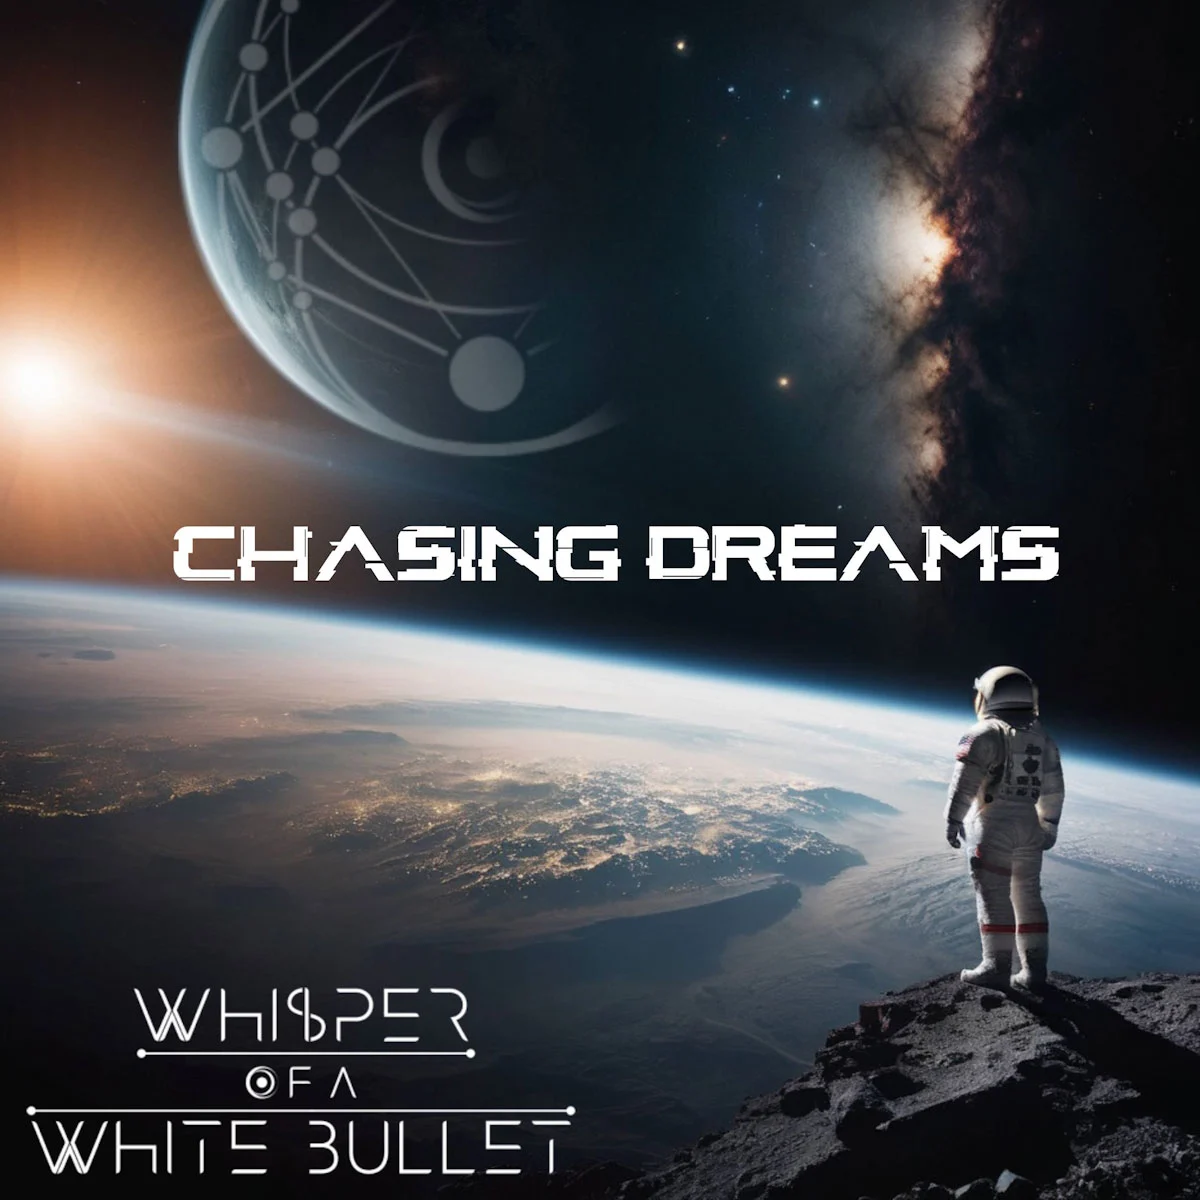 WHISPER OF A WHITE BULLET: da oggi disponibile in digitale e in formato fisico “CHASING DREAMS” l’EP d’esordio